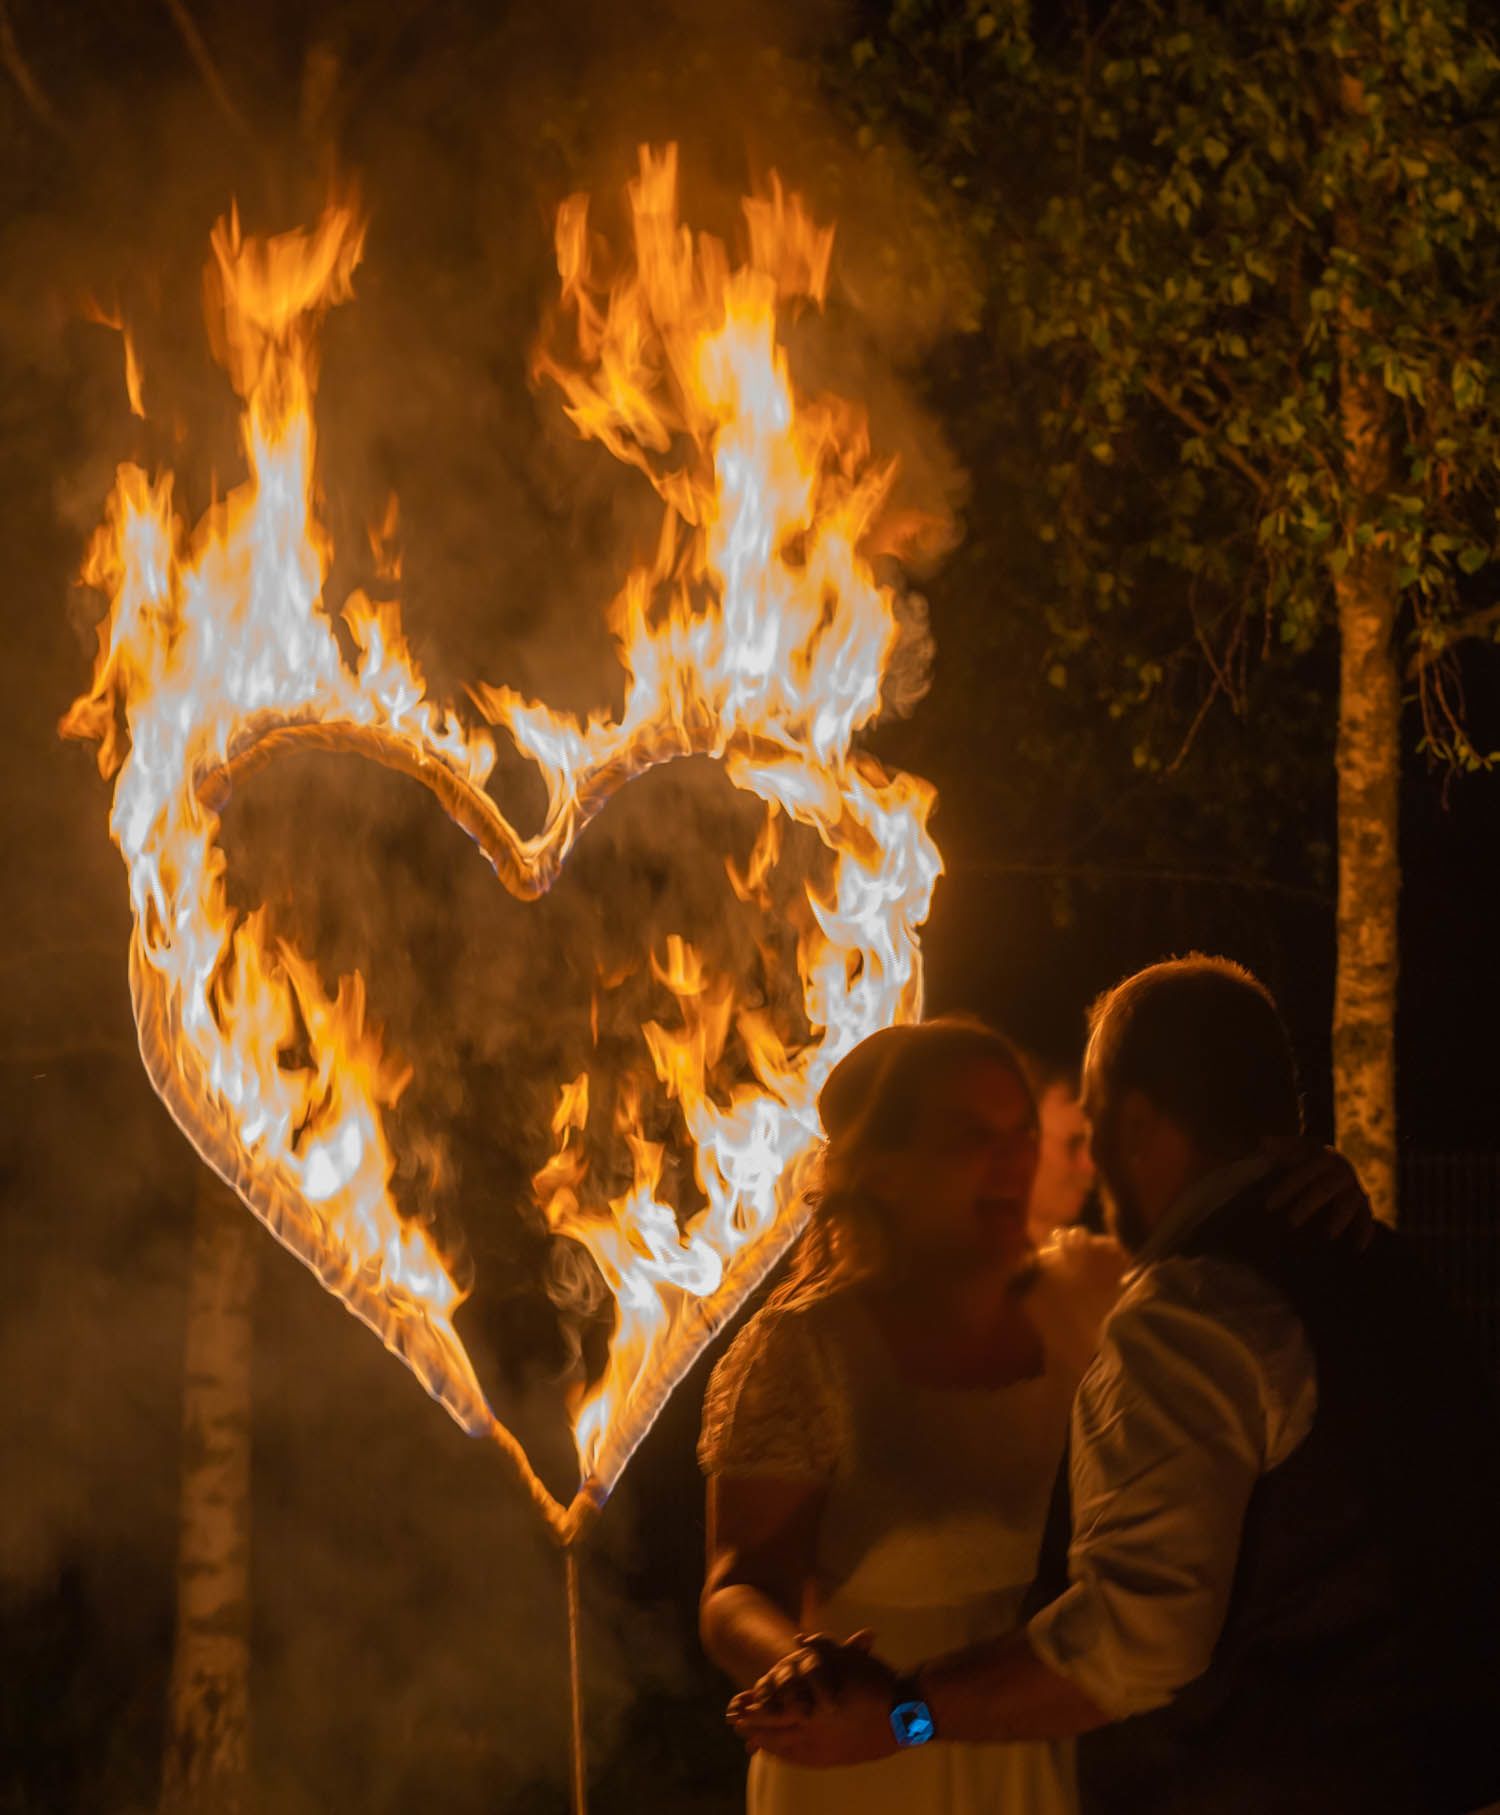 Hochzeitsfeuershow - Brautpaar entzündet brennendes Herz